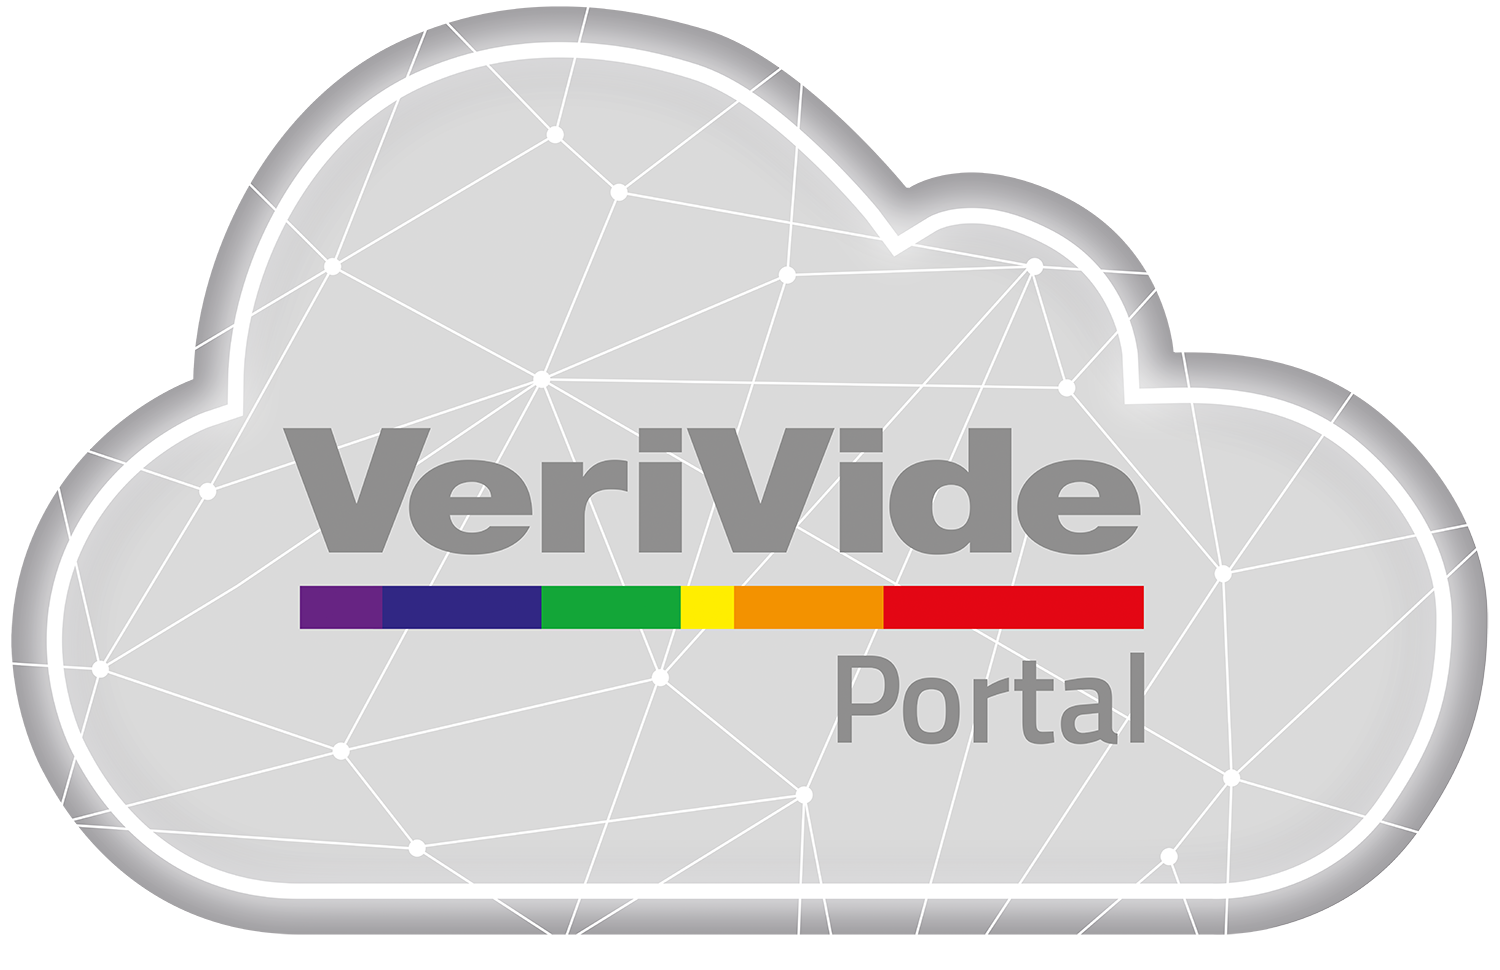 VeriVide Portal logo